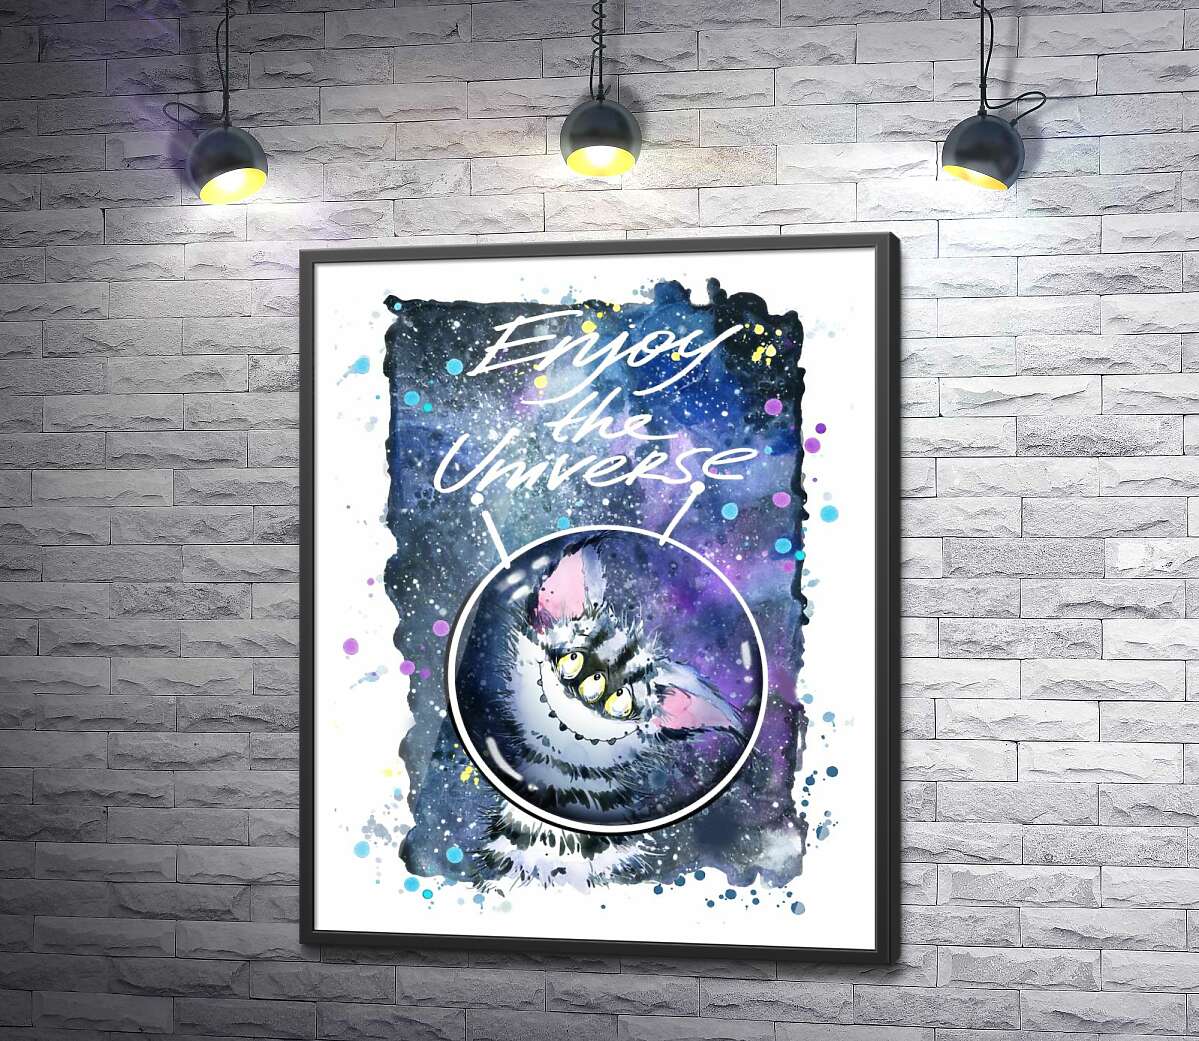 постер Застенчивый полосатый монстр в космосе с надписью "Enjoy the Universe"